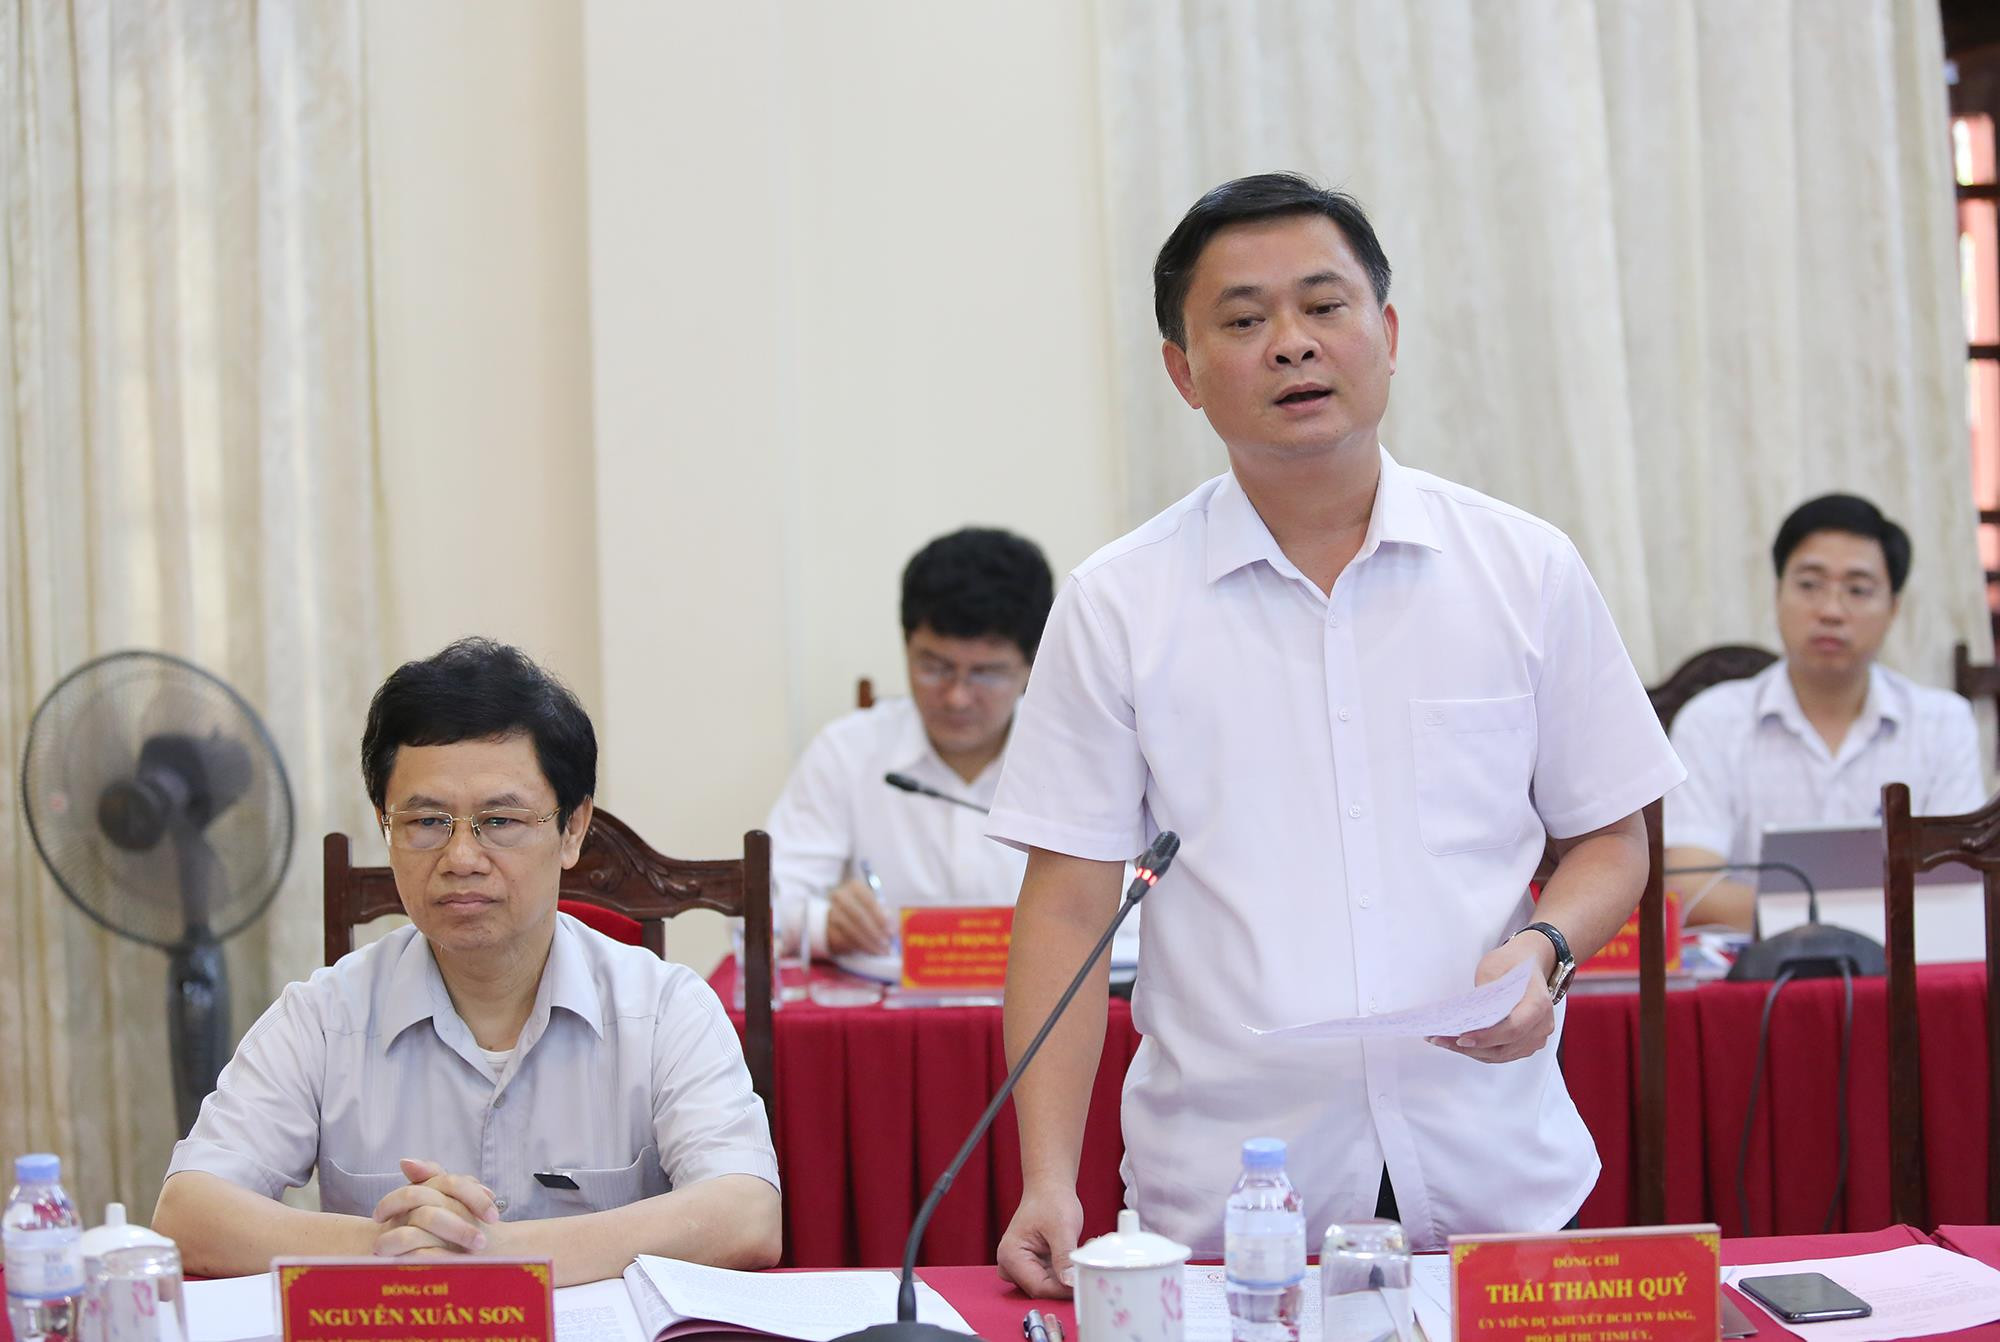 Đồng chí Thái Thanh Quý, Chủ tịch UBND tỉnh Nghệ An đánh giá cao vai trò, trách nhiệm của các đơn vi thuộc Quân khu 4 trong việc thực hiện nhiệm vụ ở các địa phương. Ảnh Đức Anh